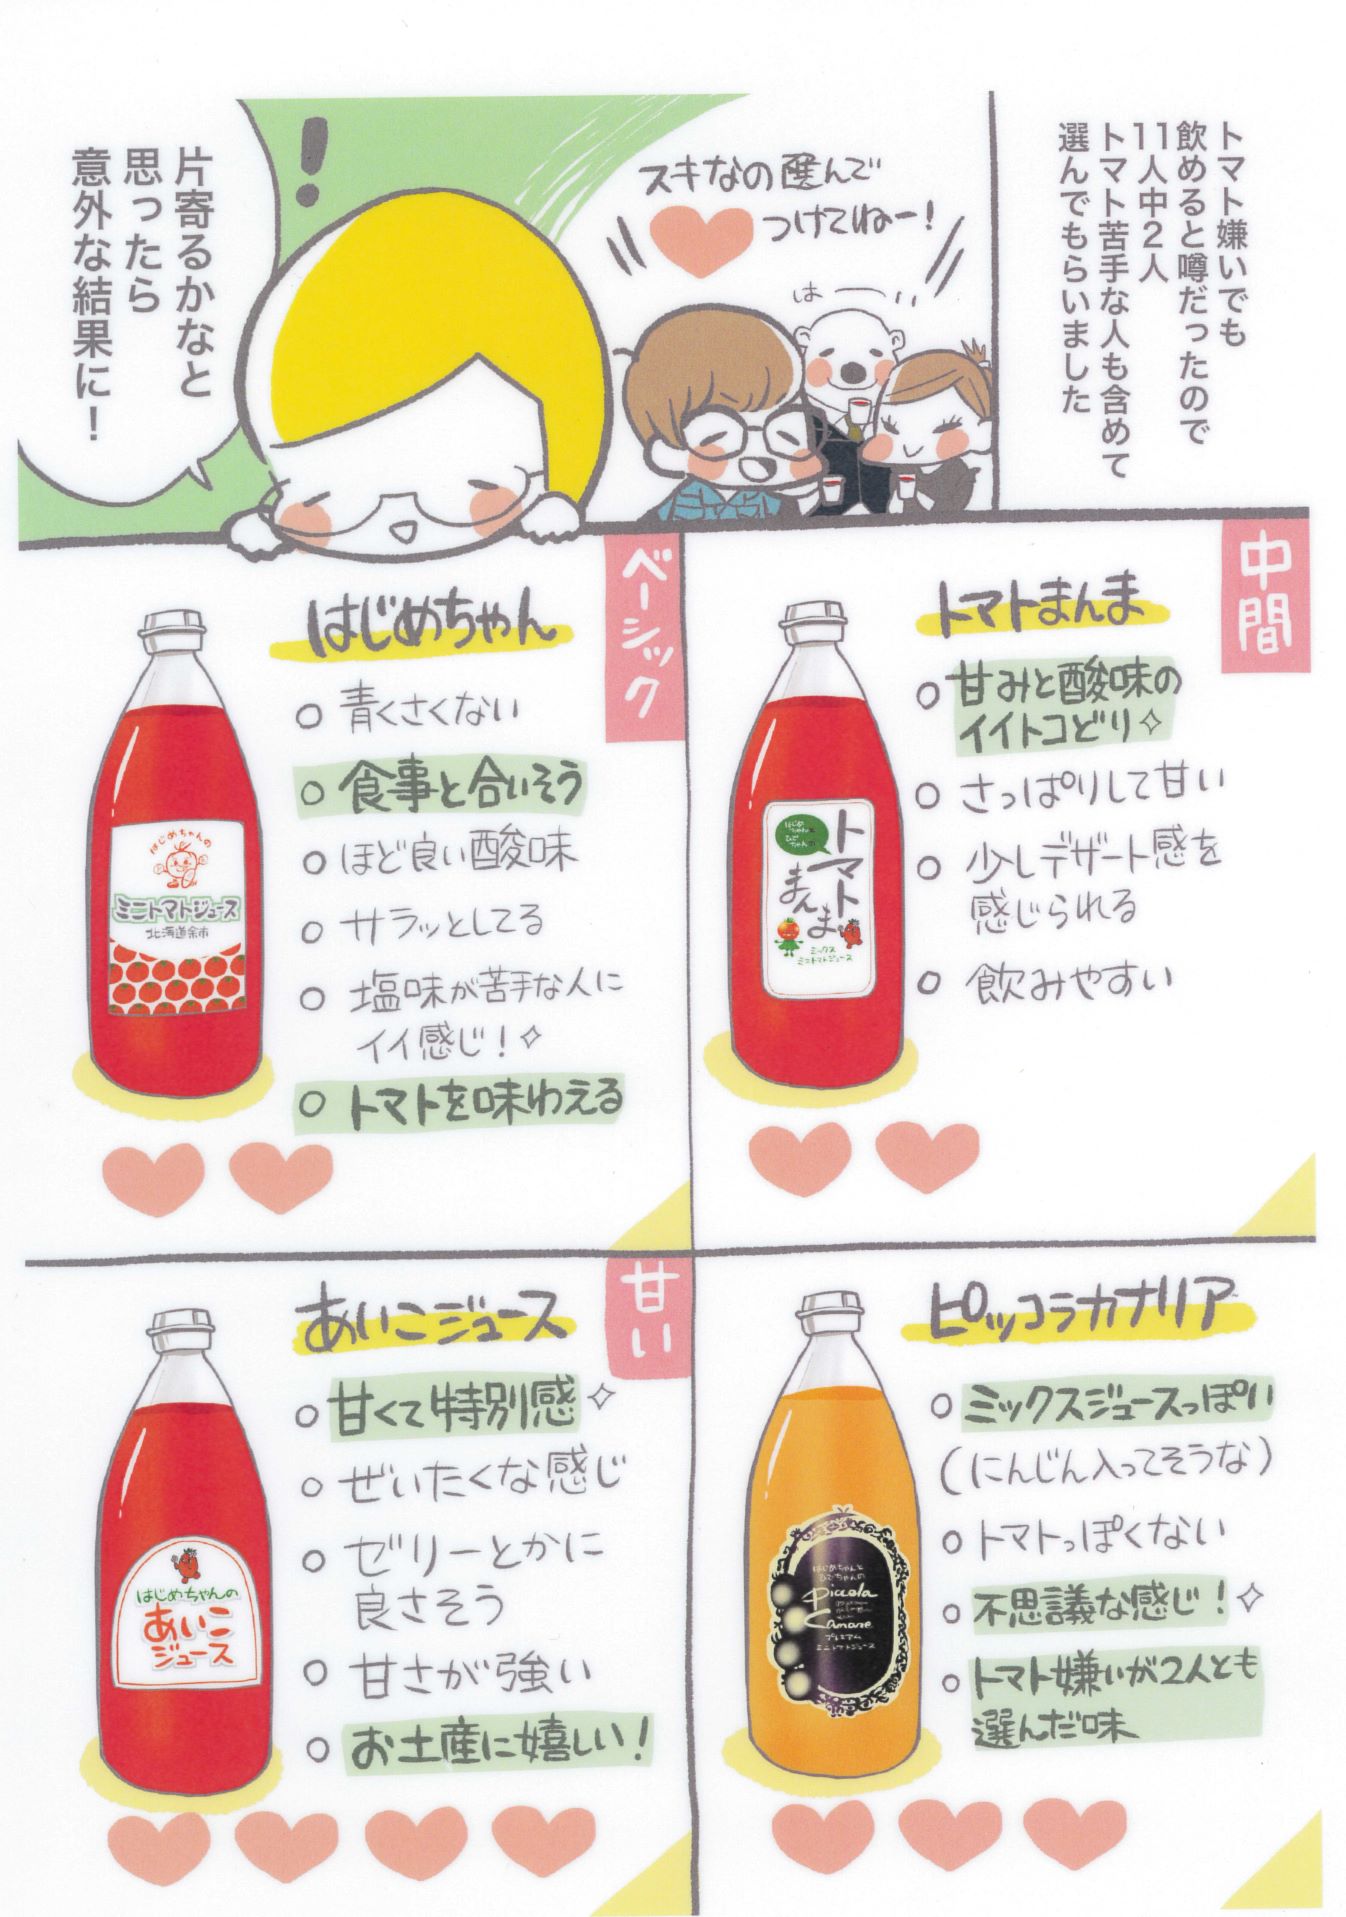 【余市産】ミニトマトジュース「はじめちゃんのあいこジュース」【アイコ】3本_Y034-0030